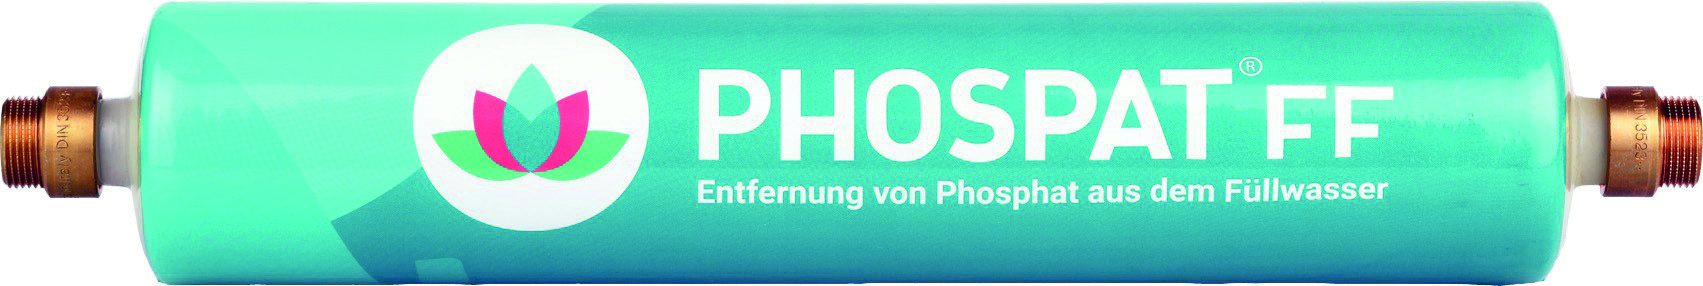 Phospat FF zur Entfernung von Phosphaten aus dem Füllwasser